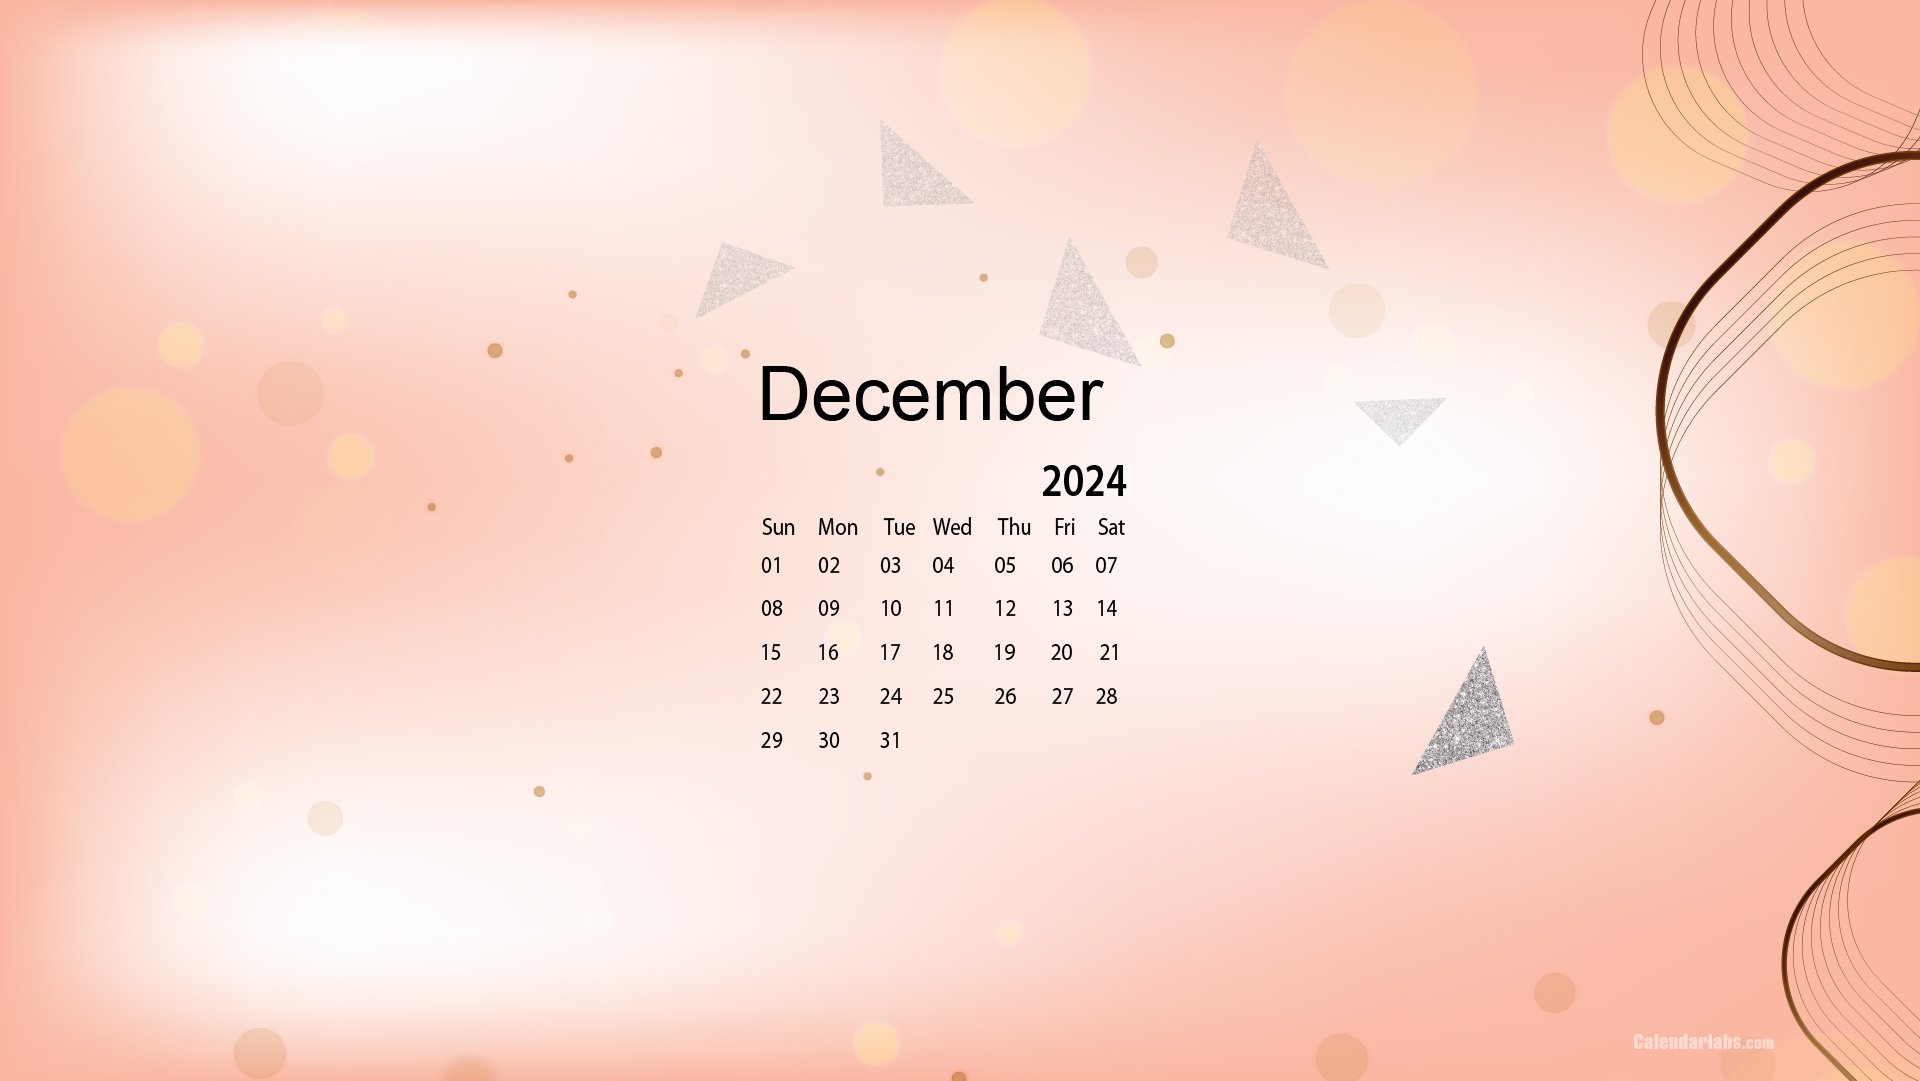 December 2024 Desktop Wallpaper Calendar